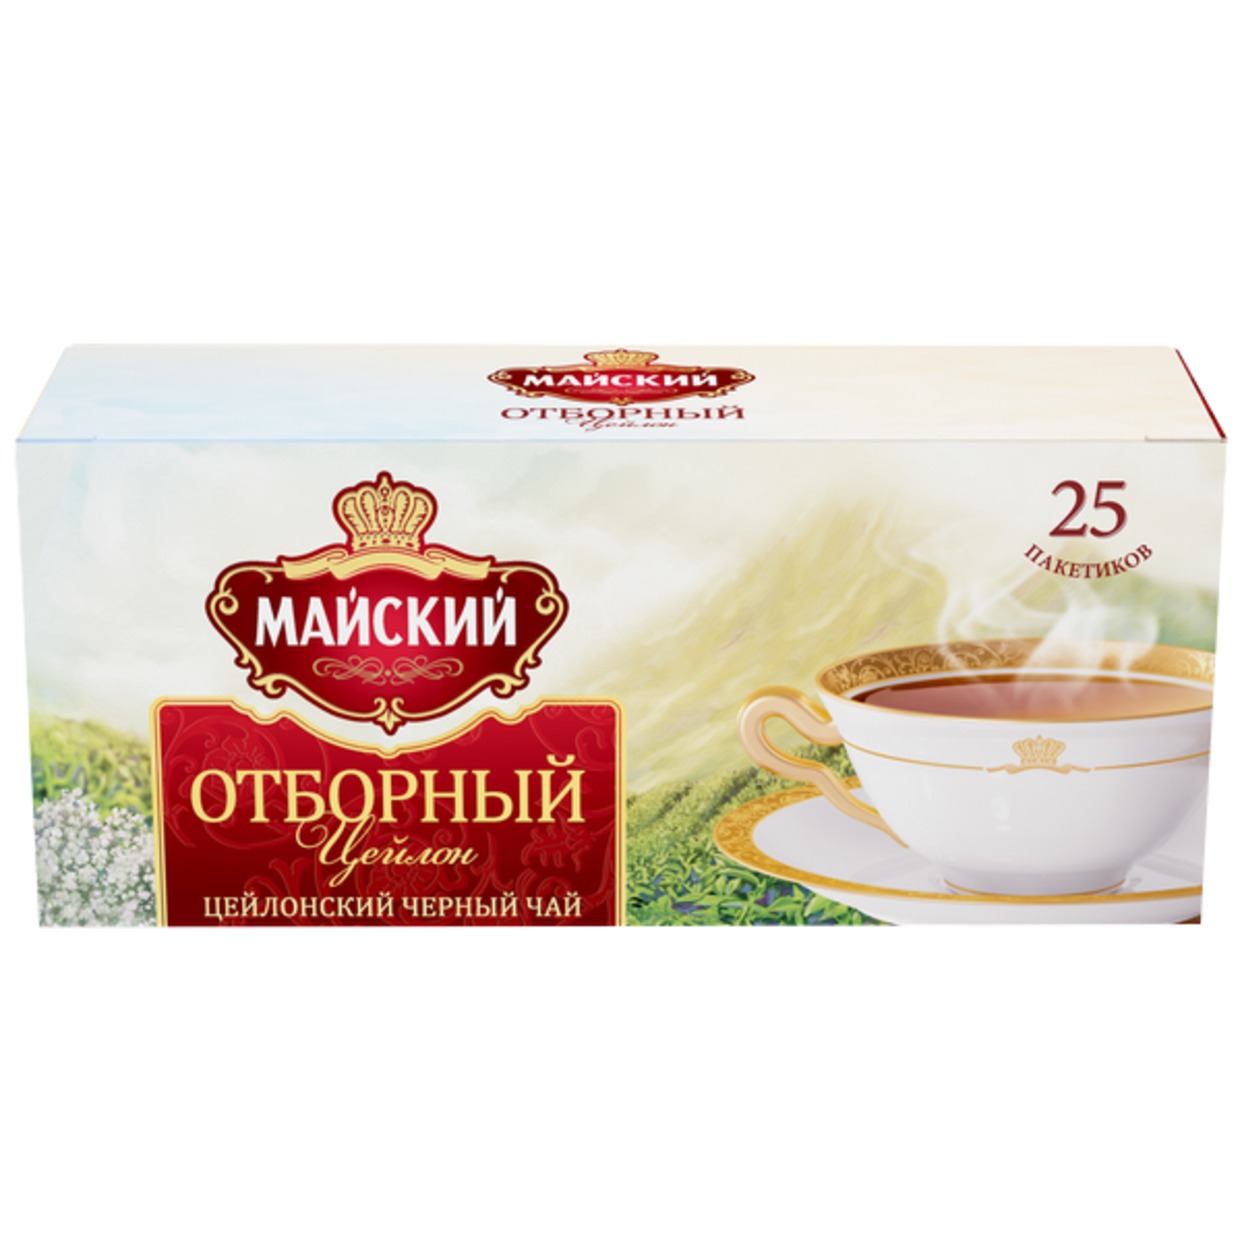 Чай Майский Отборный, 25х2 г по акции в Пятерочке